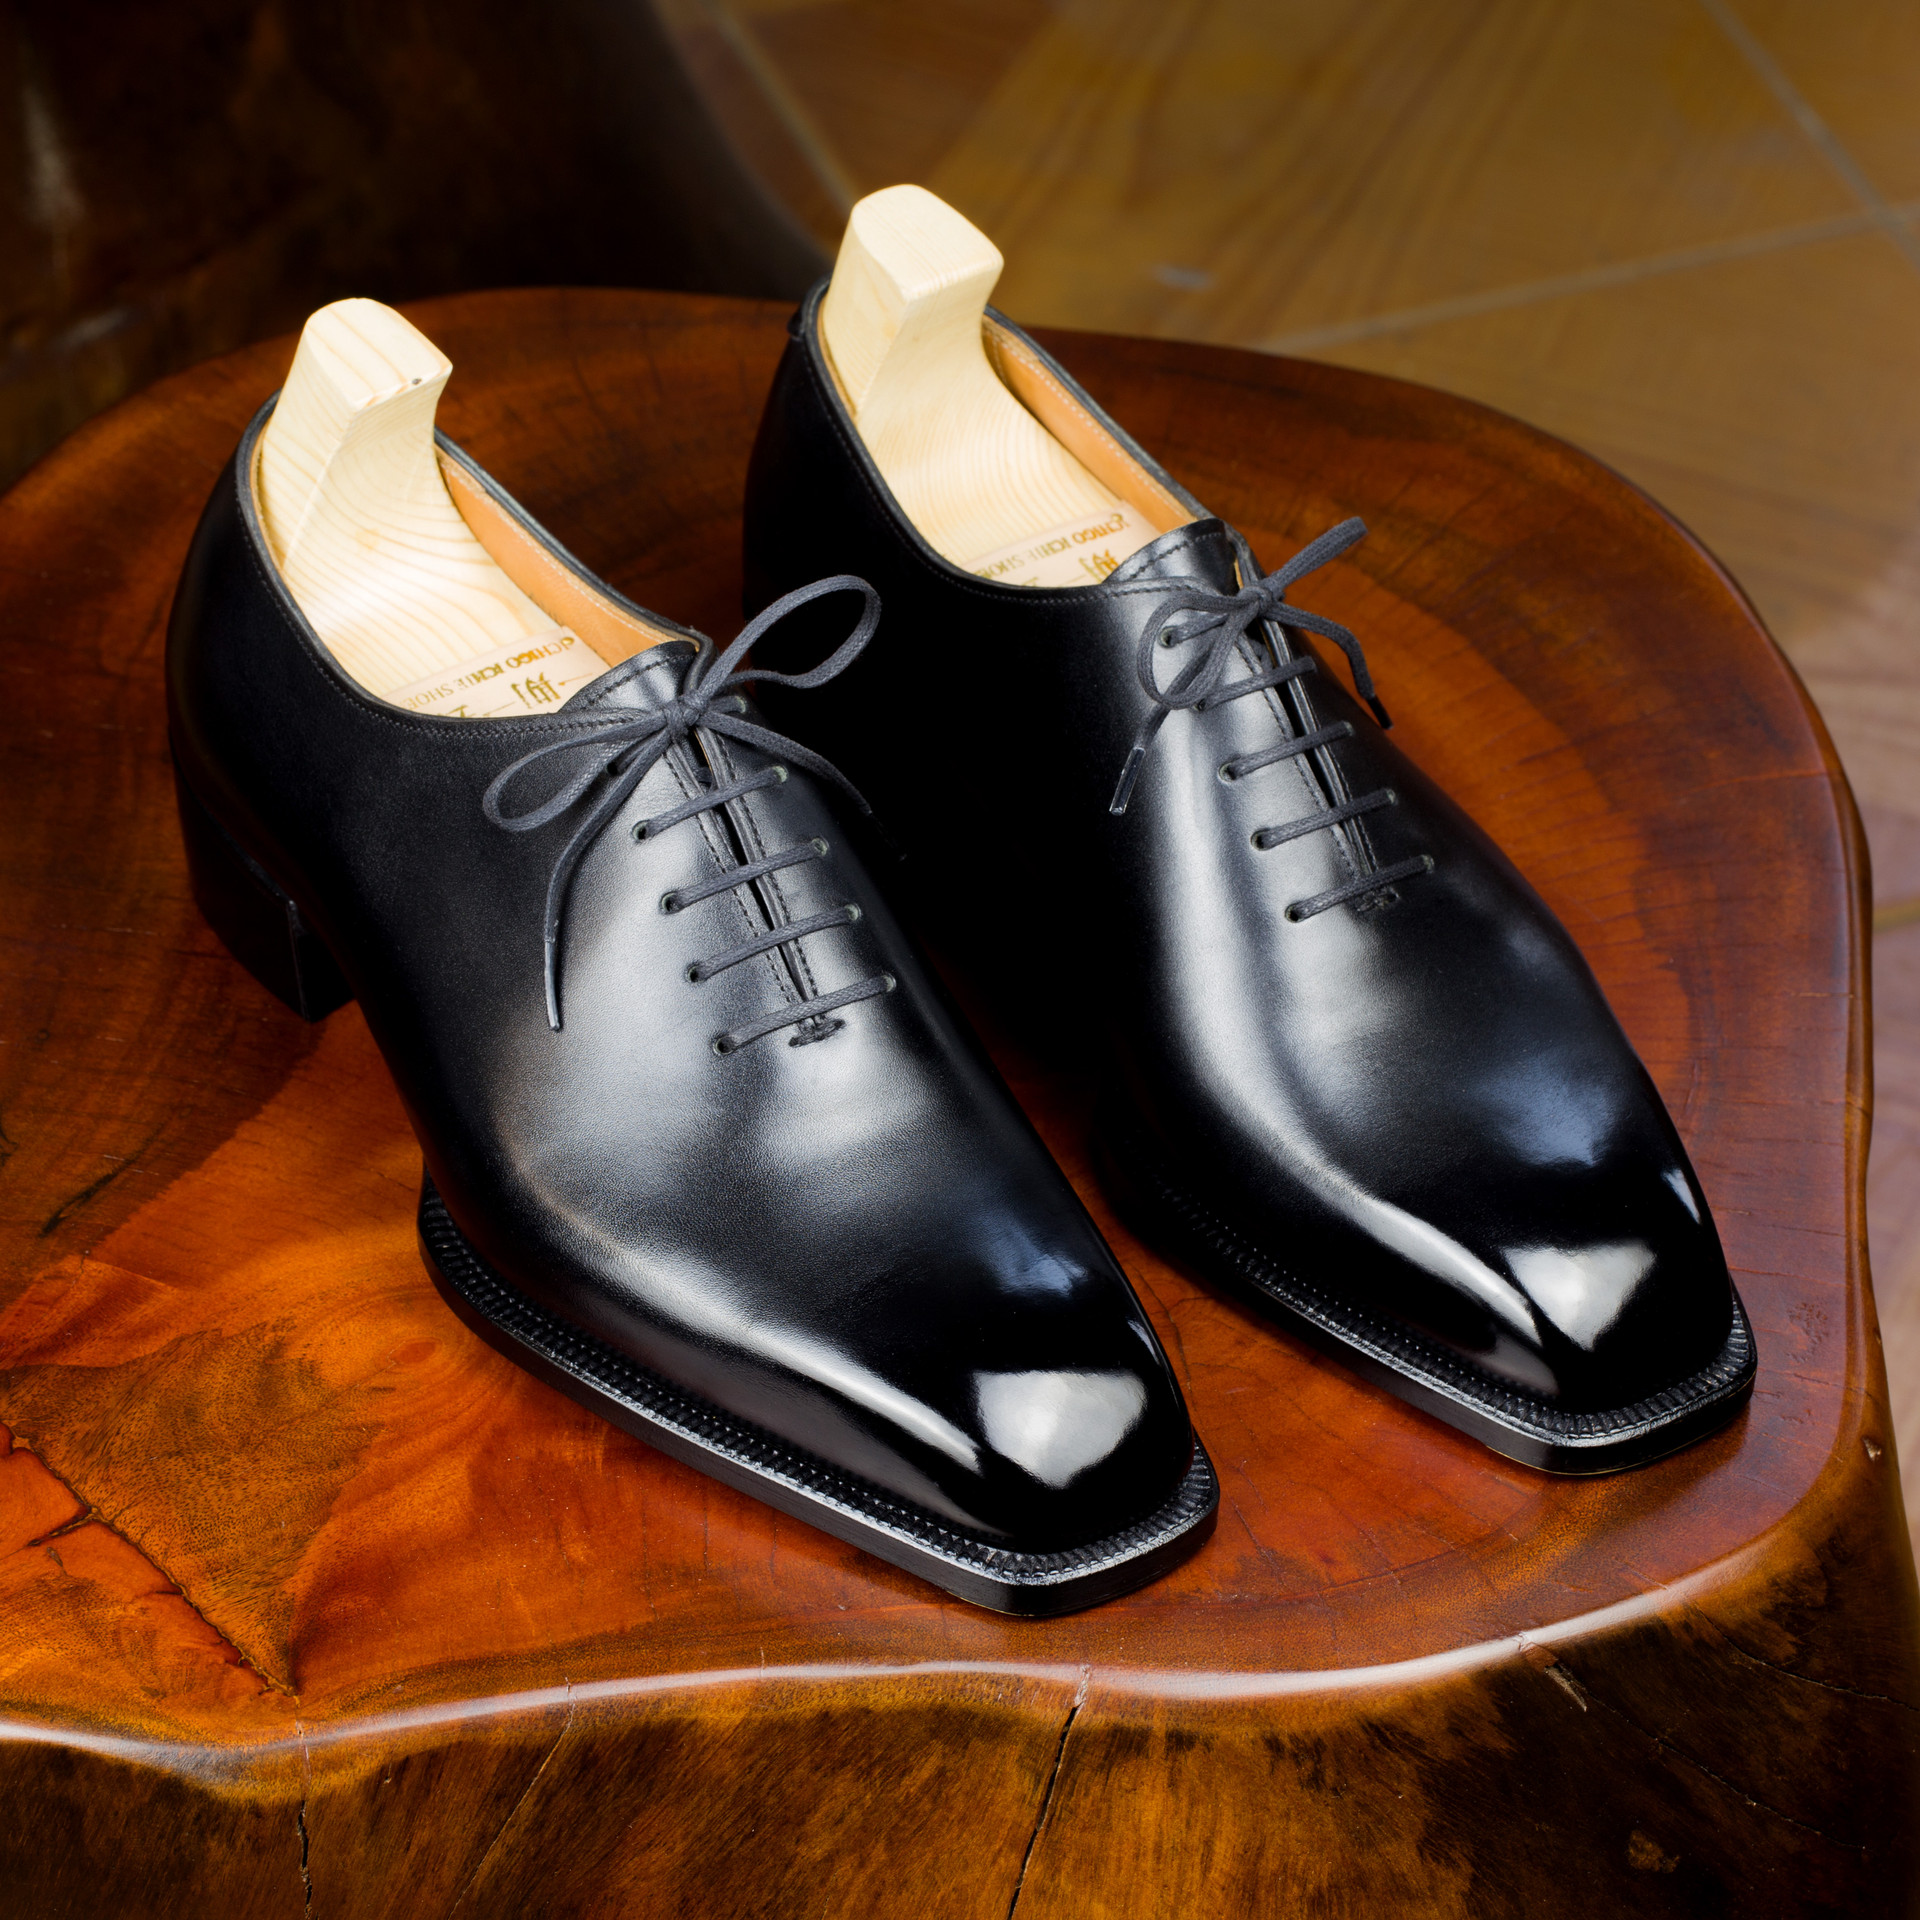 Chàng trai bỏ việc kỹ sư lương nghìn USD để làm thợ đóng giày: Không quảng cáo rầm rộ, giày giá nghìn USD vẫn “đắt hàng”, khẳng định làm vì đam mê - Ảnh 2.